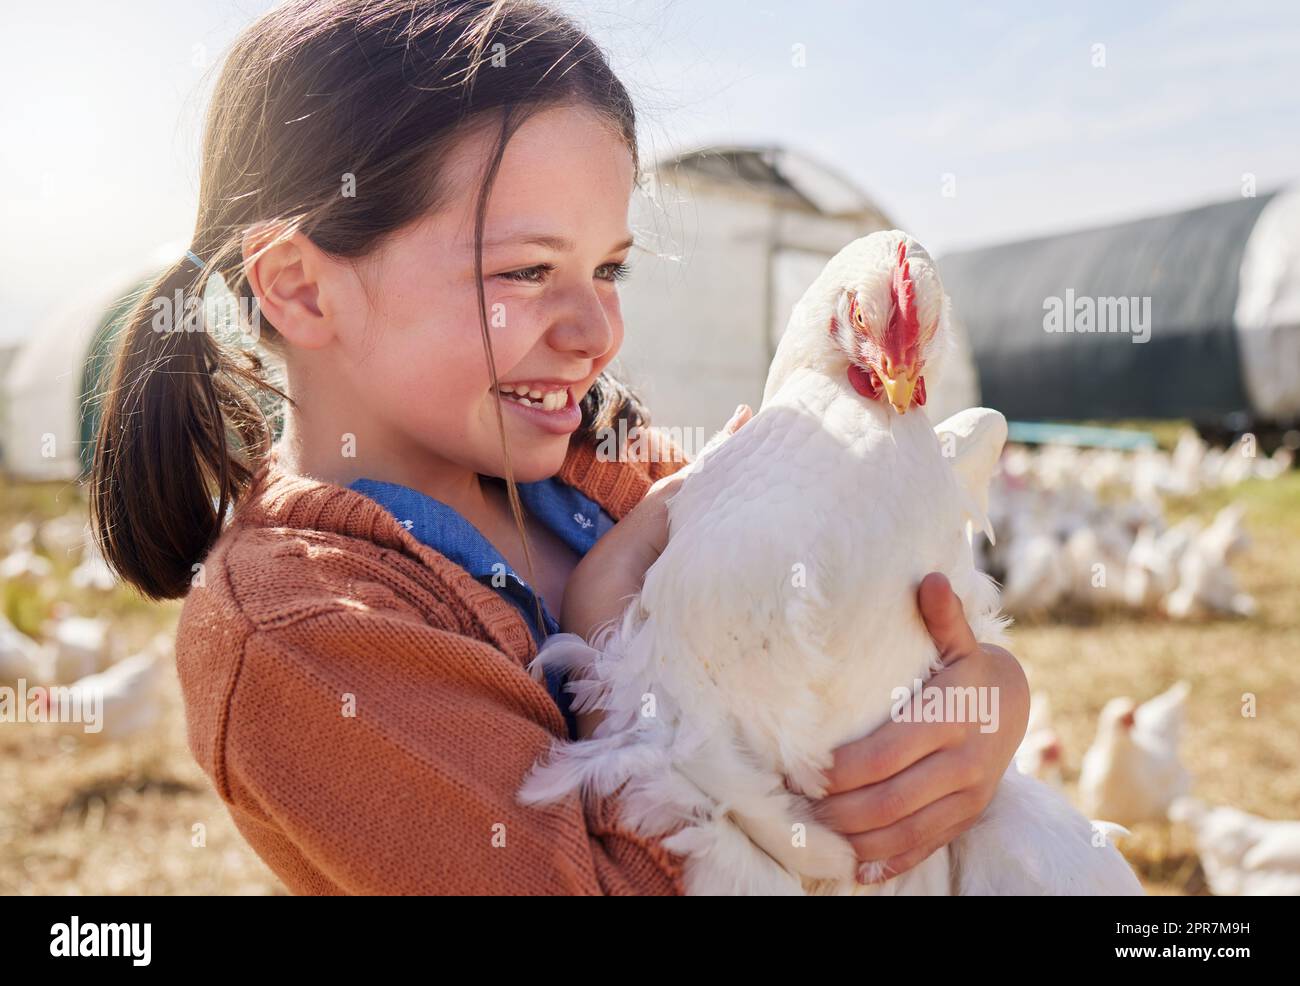 Die Landwirtschaft lehrt Kinder, wie man für Tiere zu kümmern. Ein entzückendes kleines Mädchen hält ein Huhn auf einem Bauernhof. Stockfoto